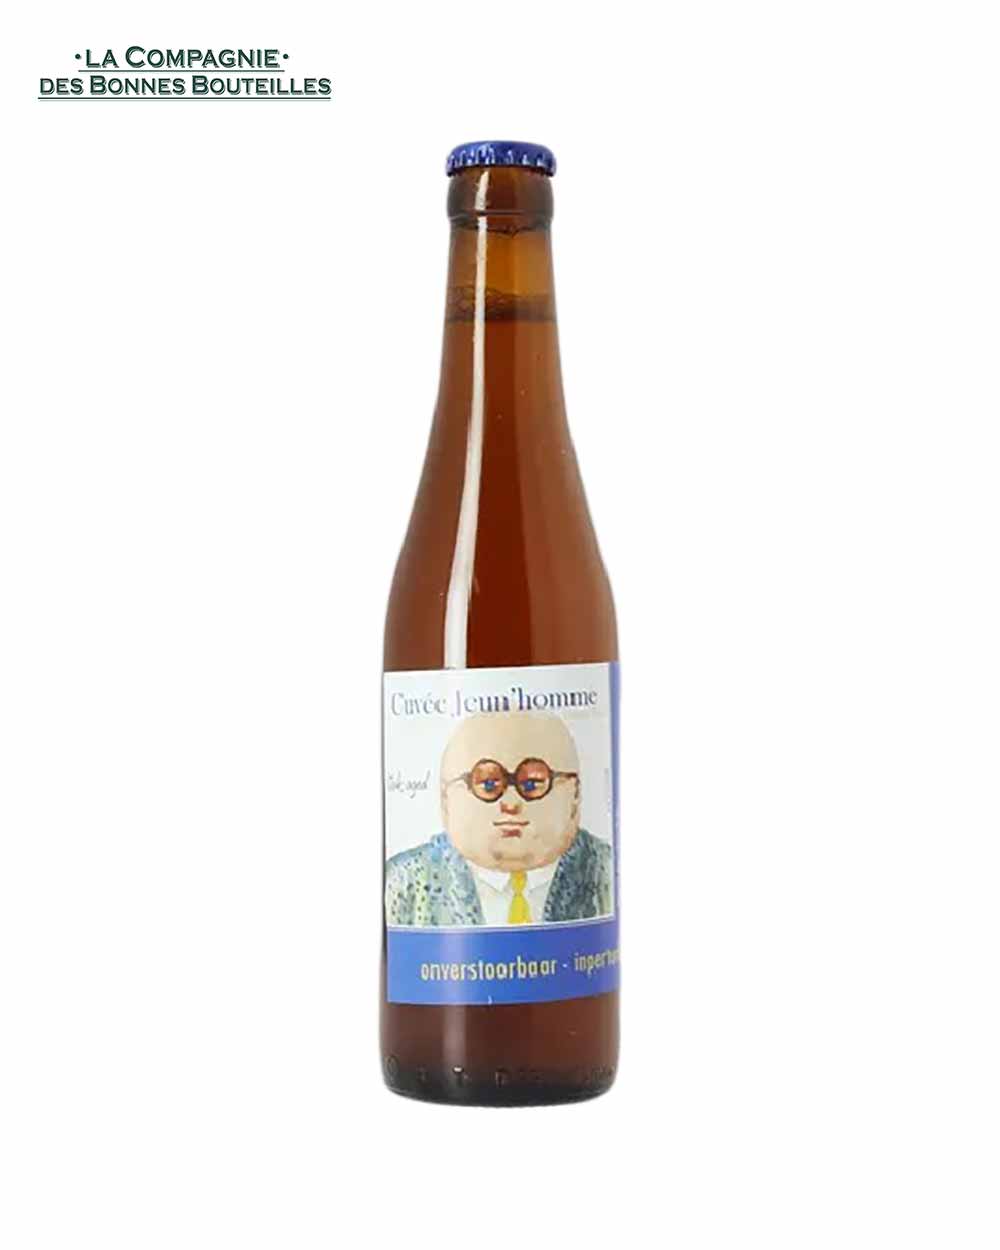 Bière De Leite - Jeun'Homme - blond sour barrel - 33cl